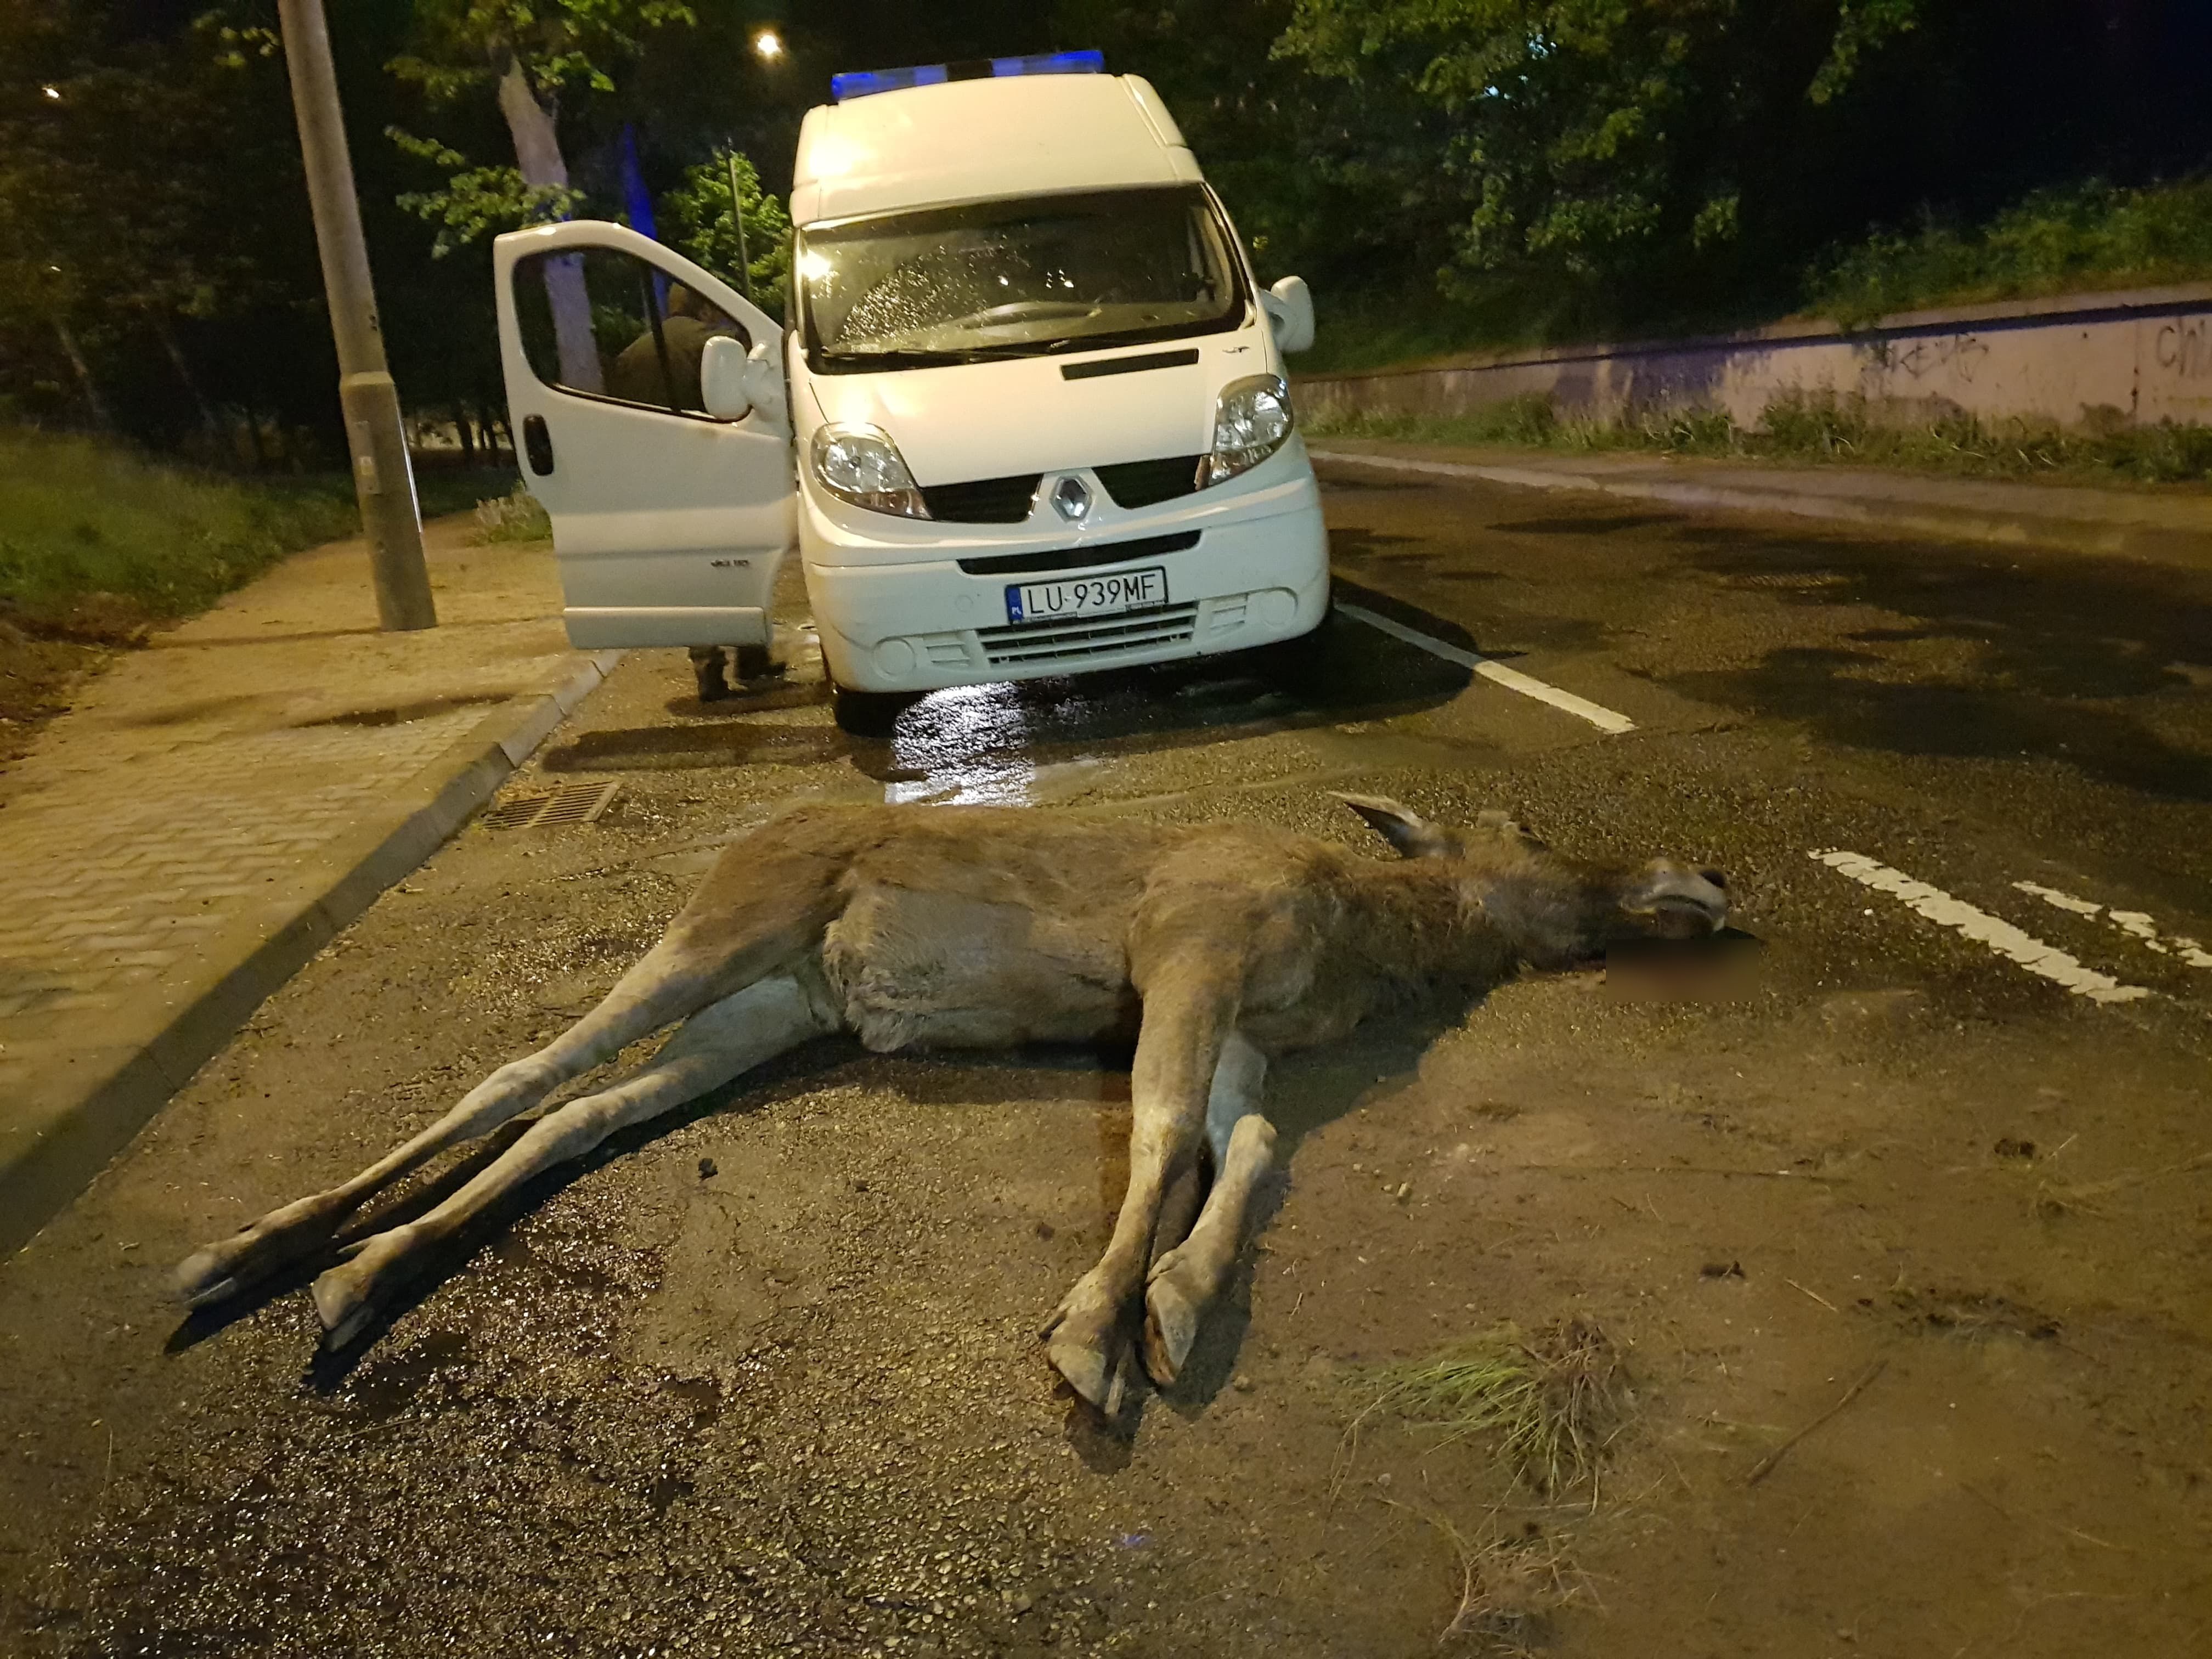 Łoś spadł z wiaduktu w Lublinie. Zwierzę nie przeżyło upadku na ulicę (zdjęcia)